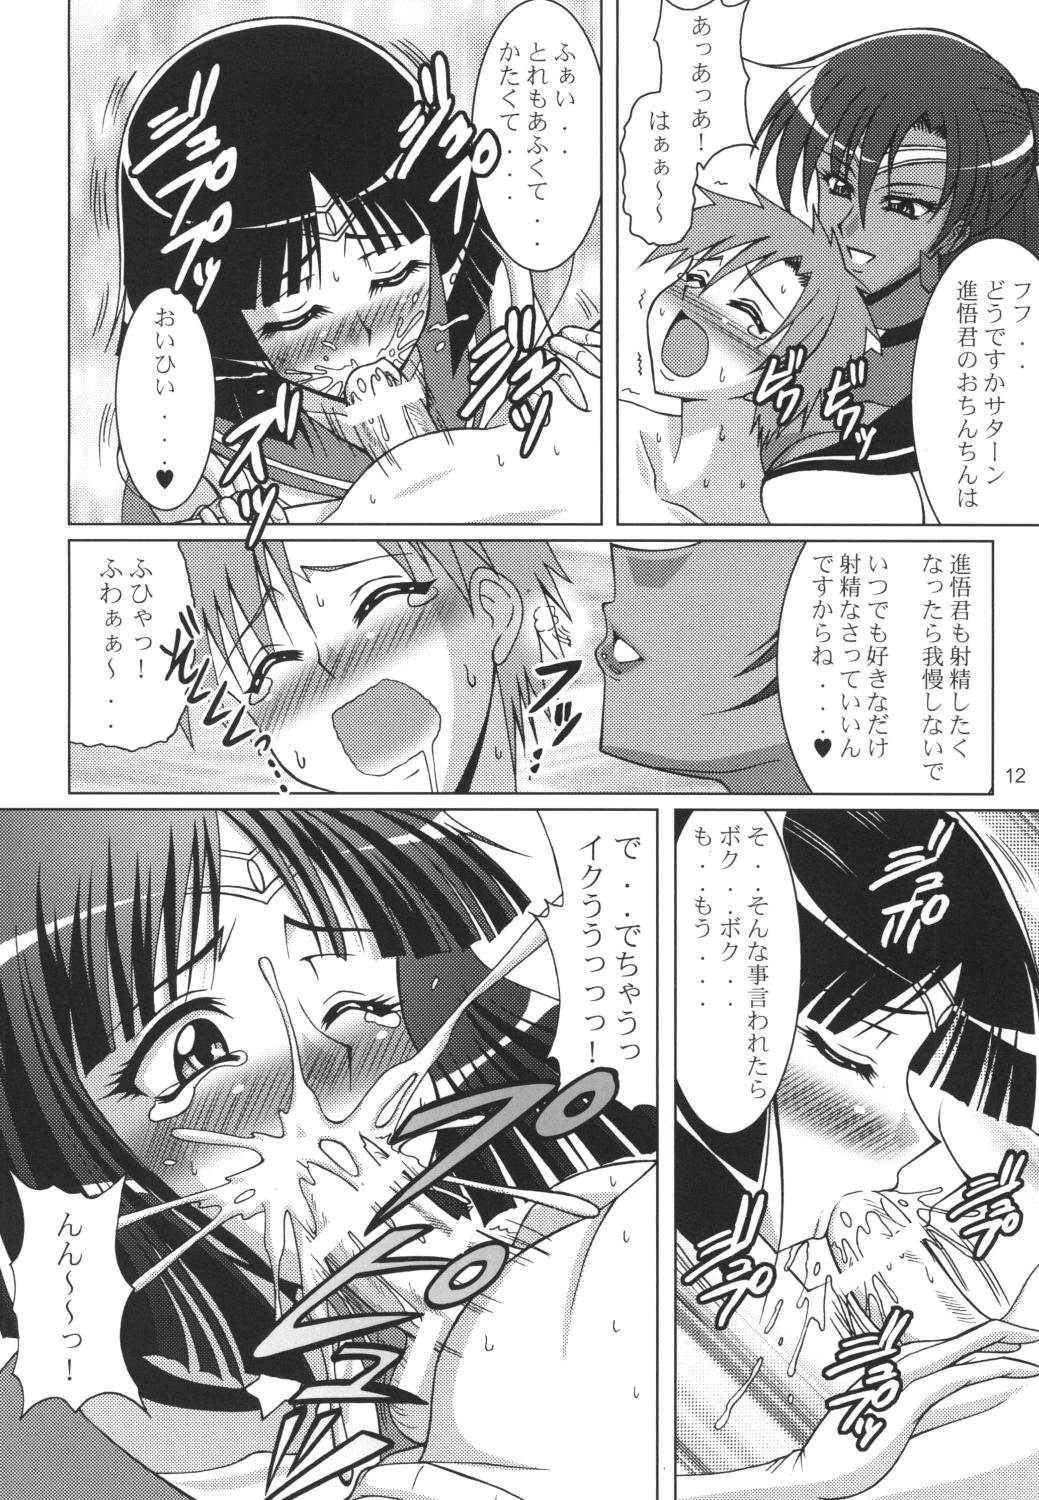 Casado Rojou no Meiousei - Sailor moon Sister - Page 11